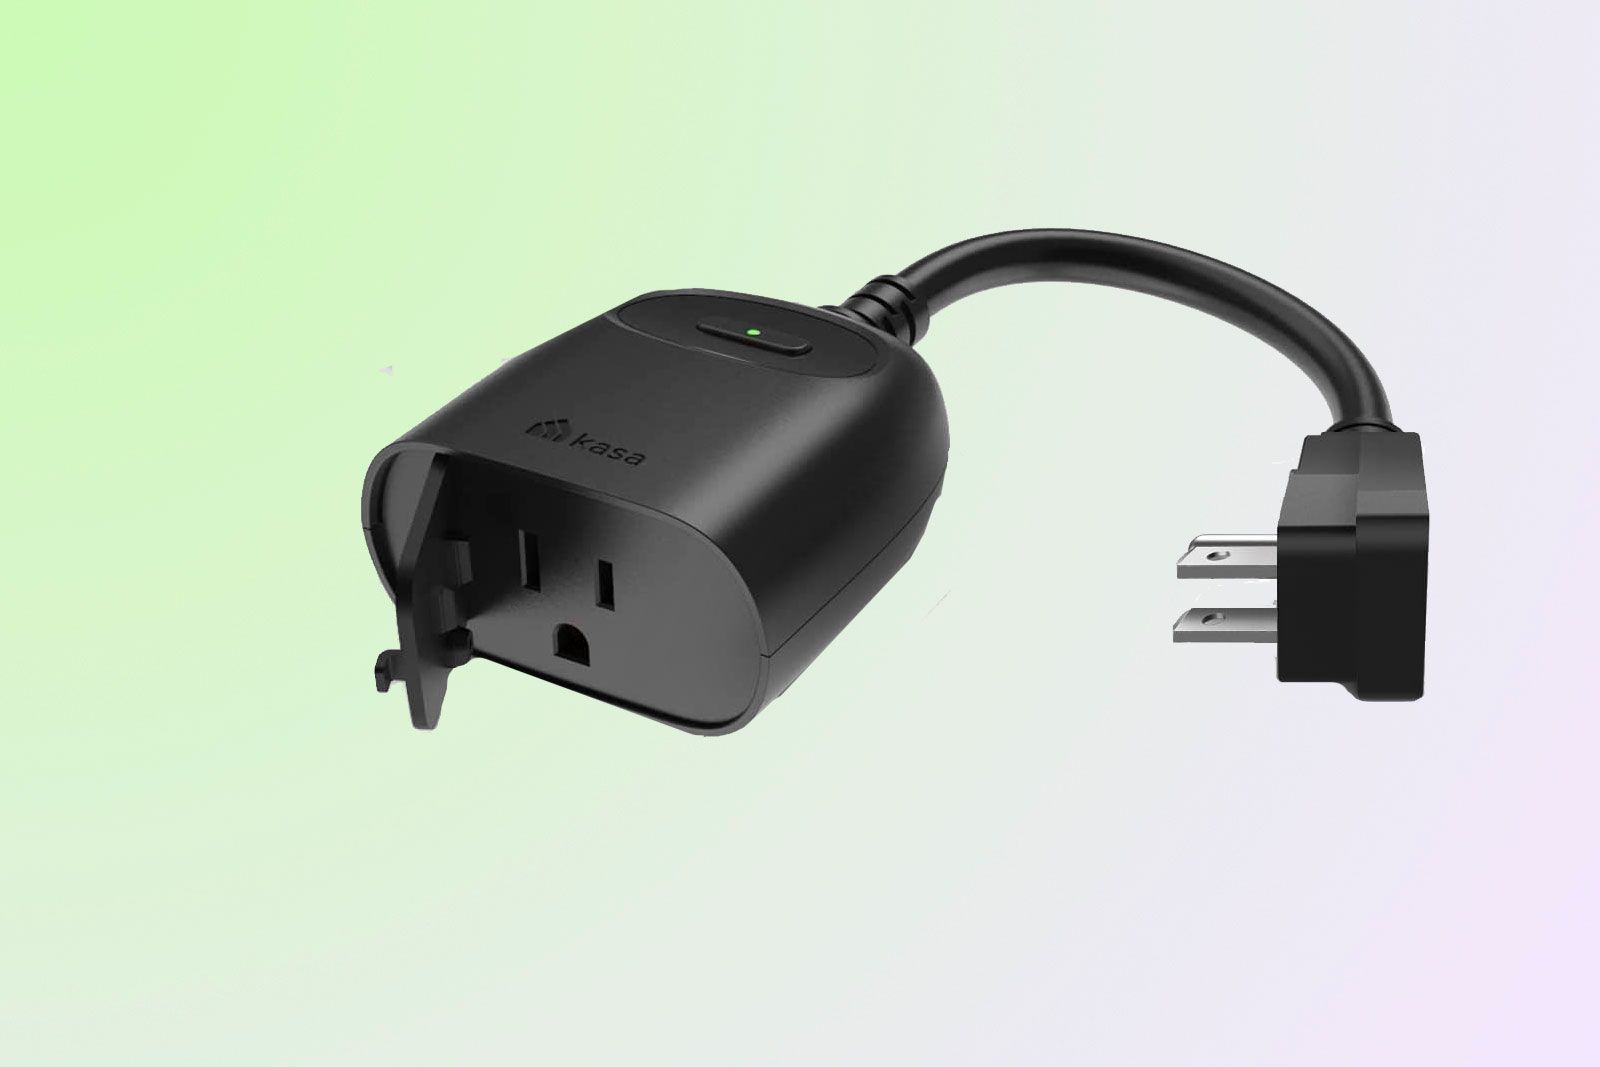 Kasa Outdoor Smart Dimmer Plug KP405